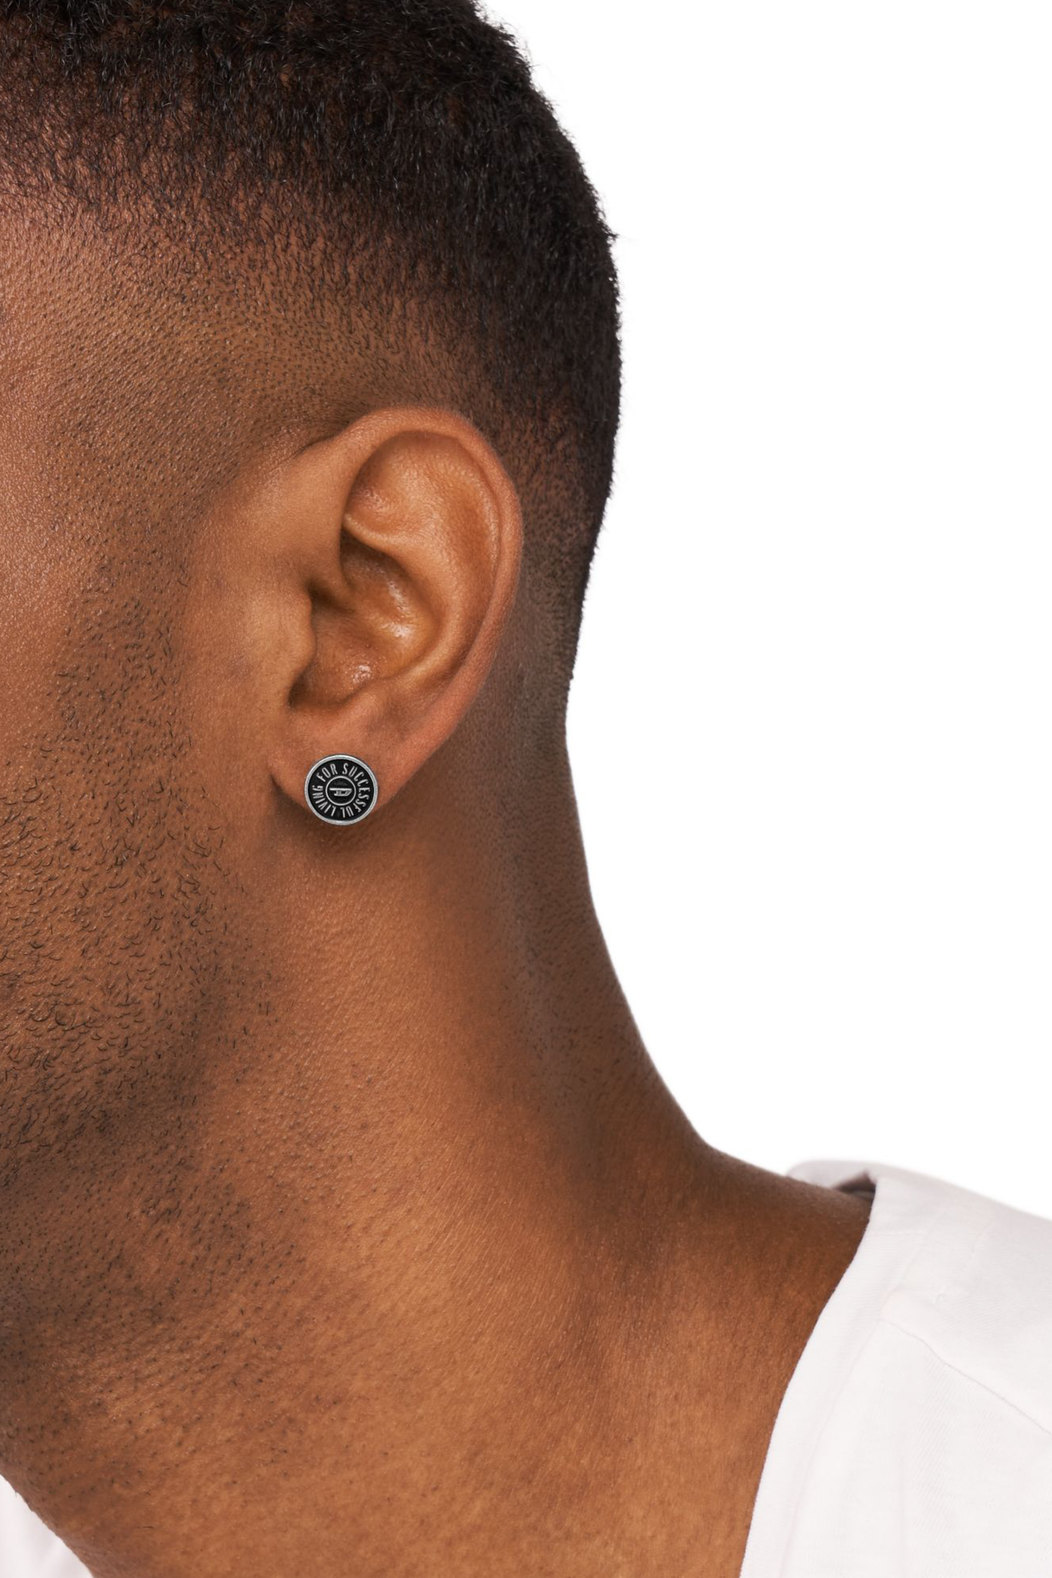 Stainless steel stud earring